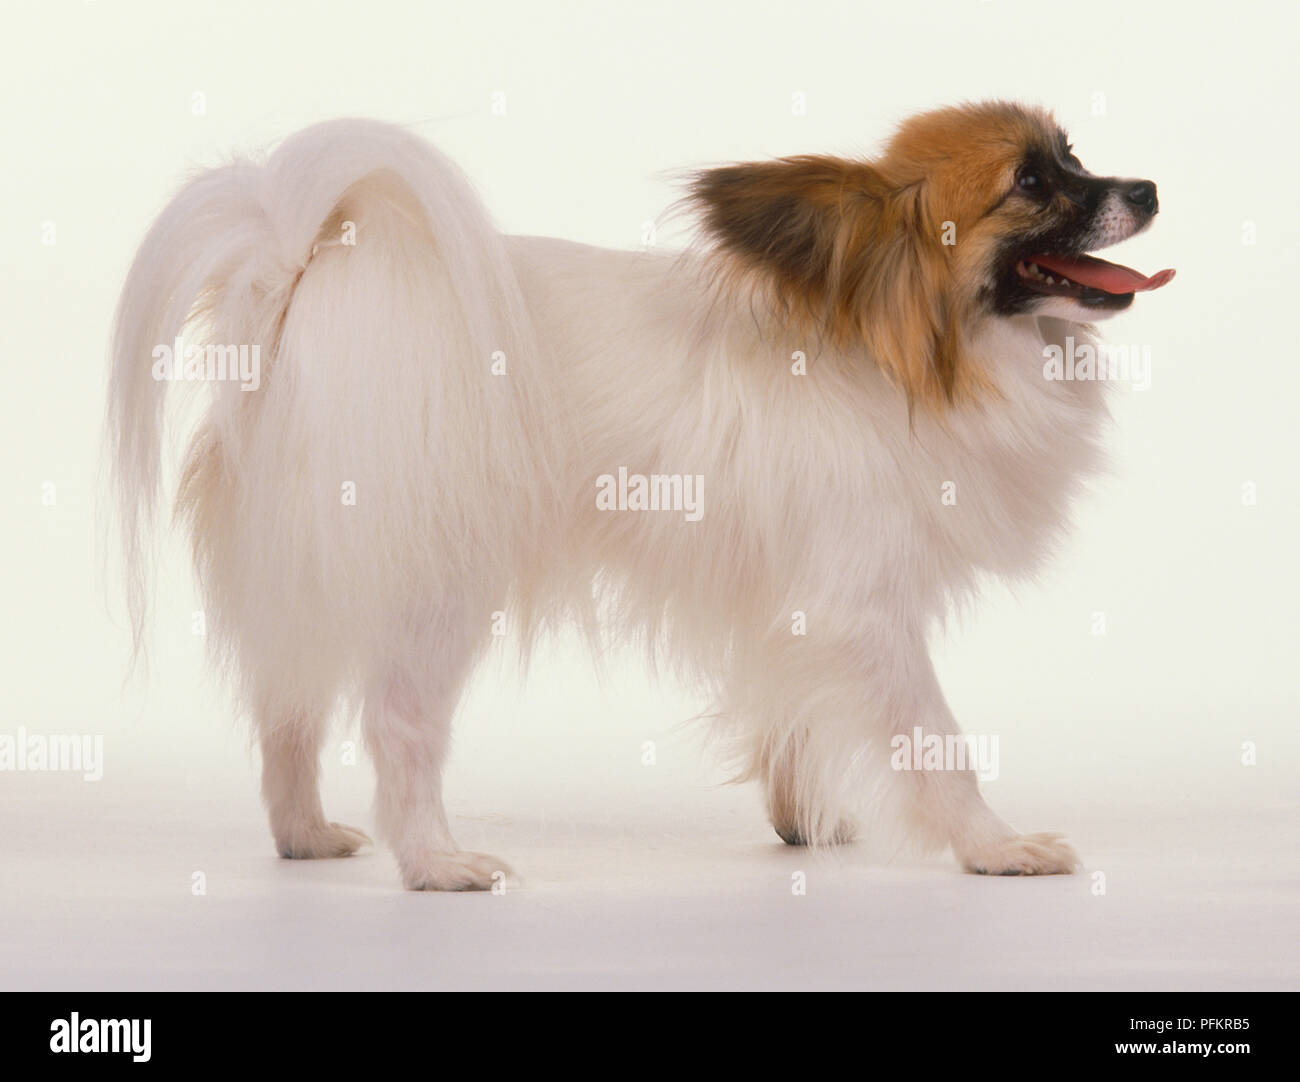 Papillon Hund (Canis familiaris) hauptsächlich weißes Fell und braunen Kopf Markierungen angezeigt, Seitenansicht Stockfoto